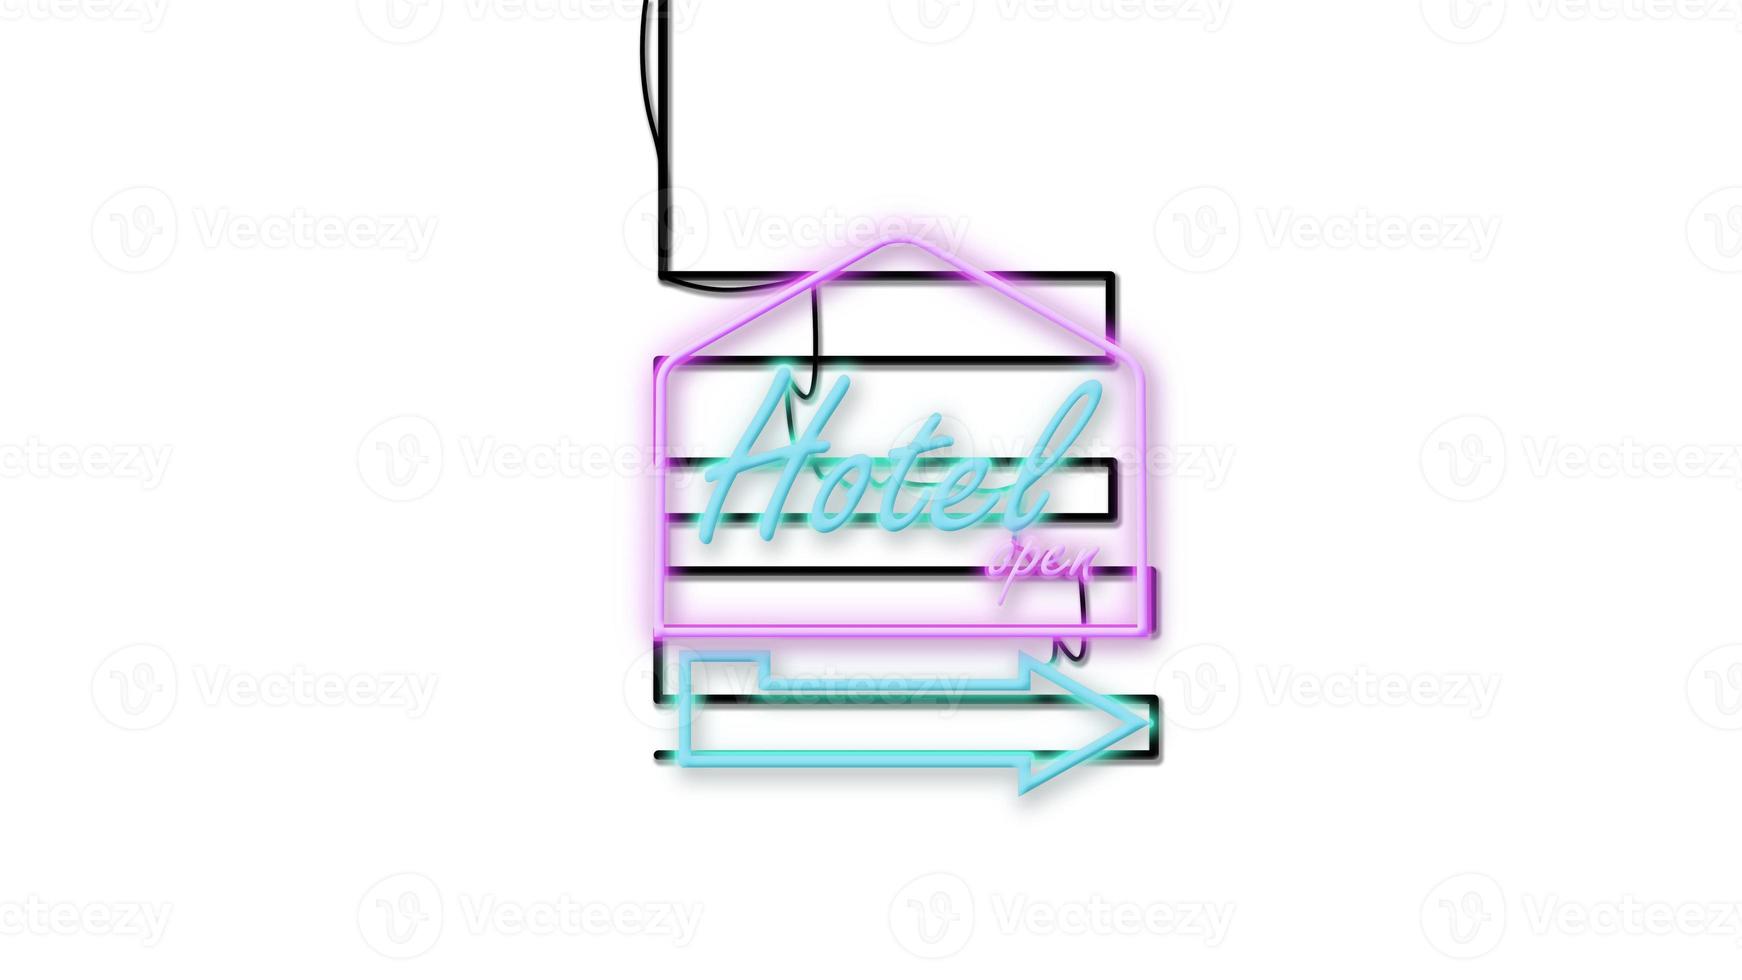 emblème de l'enseigne de l'hôtel dans un style néon sur fond blanc photo